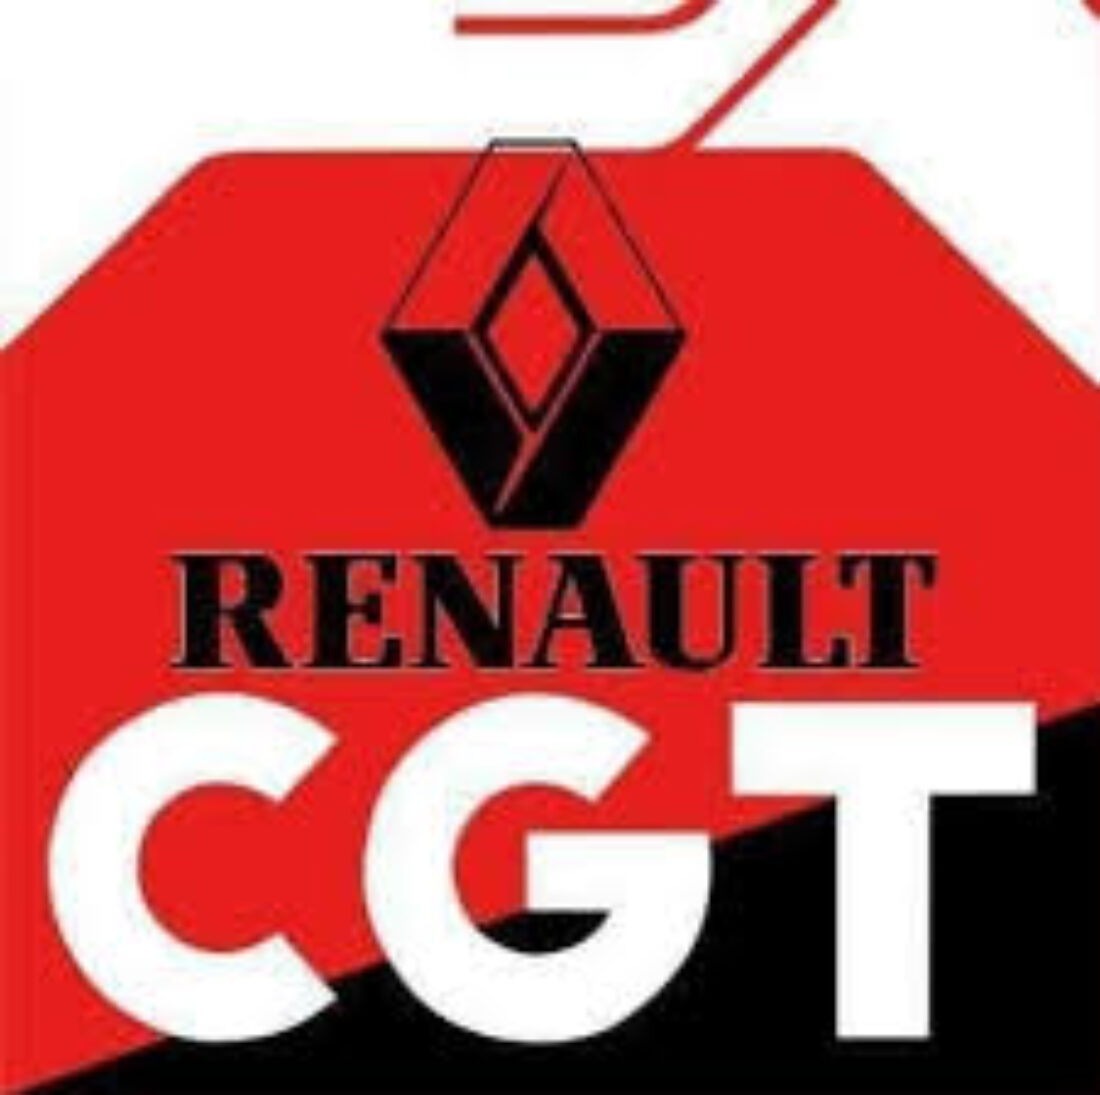 CGT califica de chantaje el plan que la dirección de la empresa ha expuesto ante la representación de los trabajadores